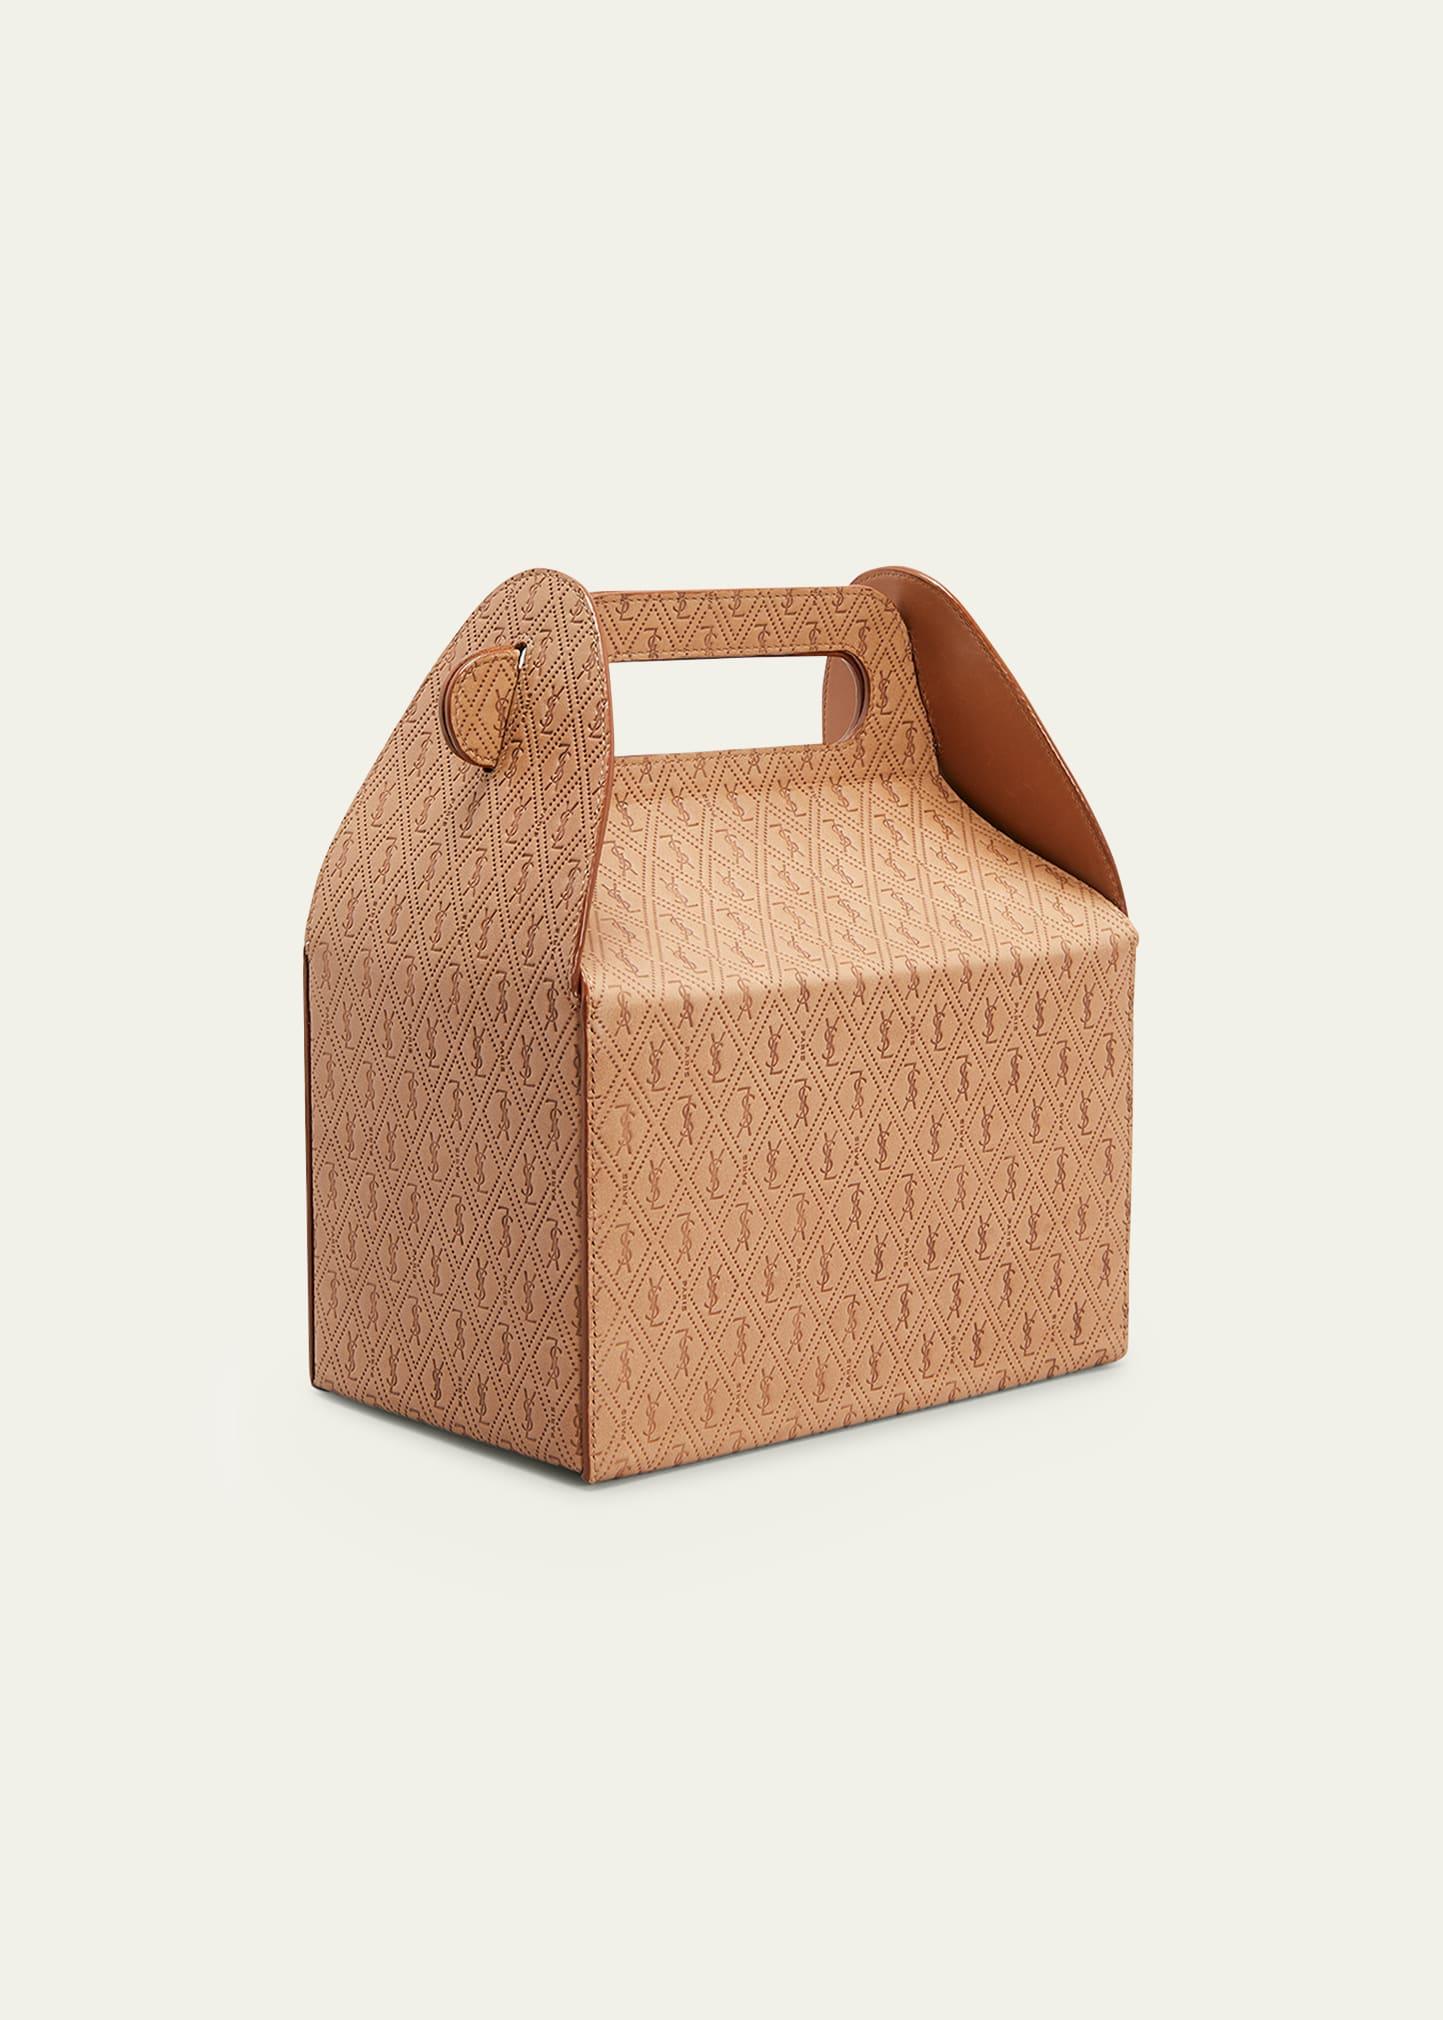 ysl bag lunch box｜TikTok Search